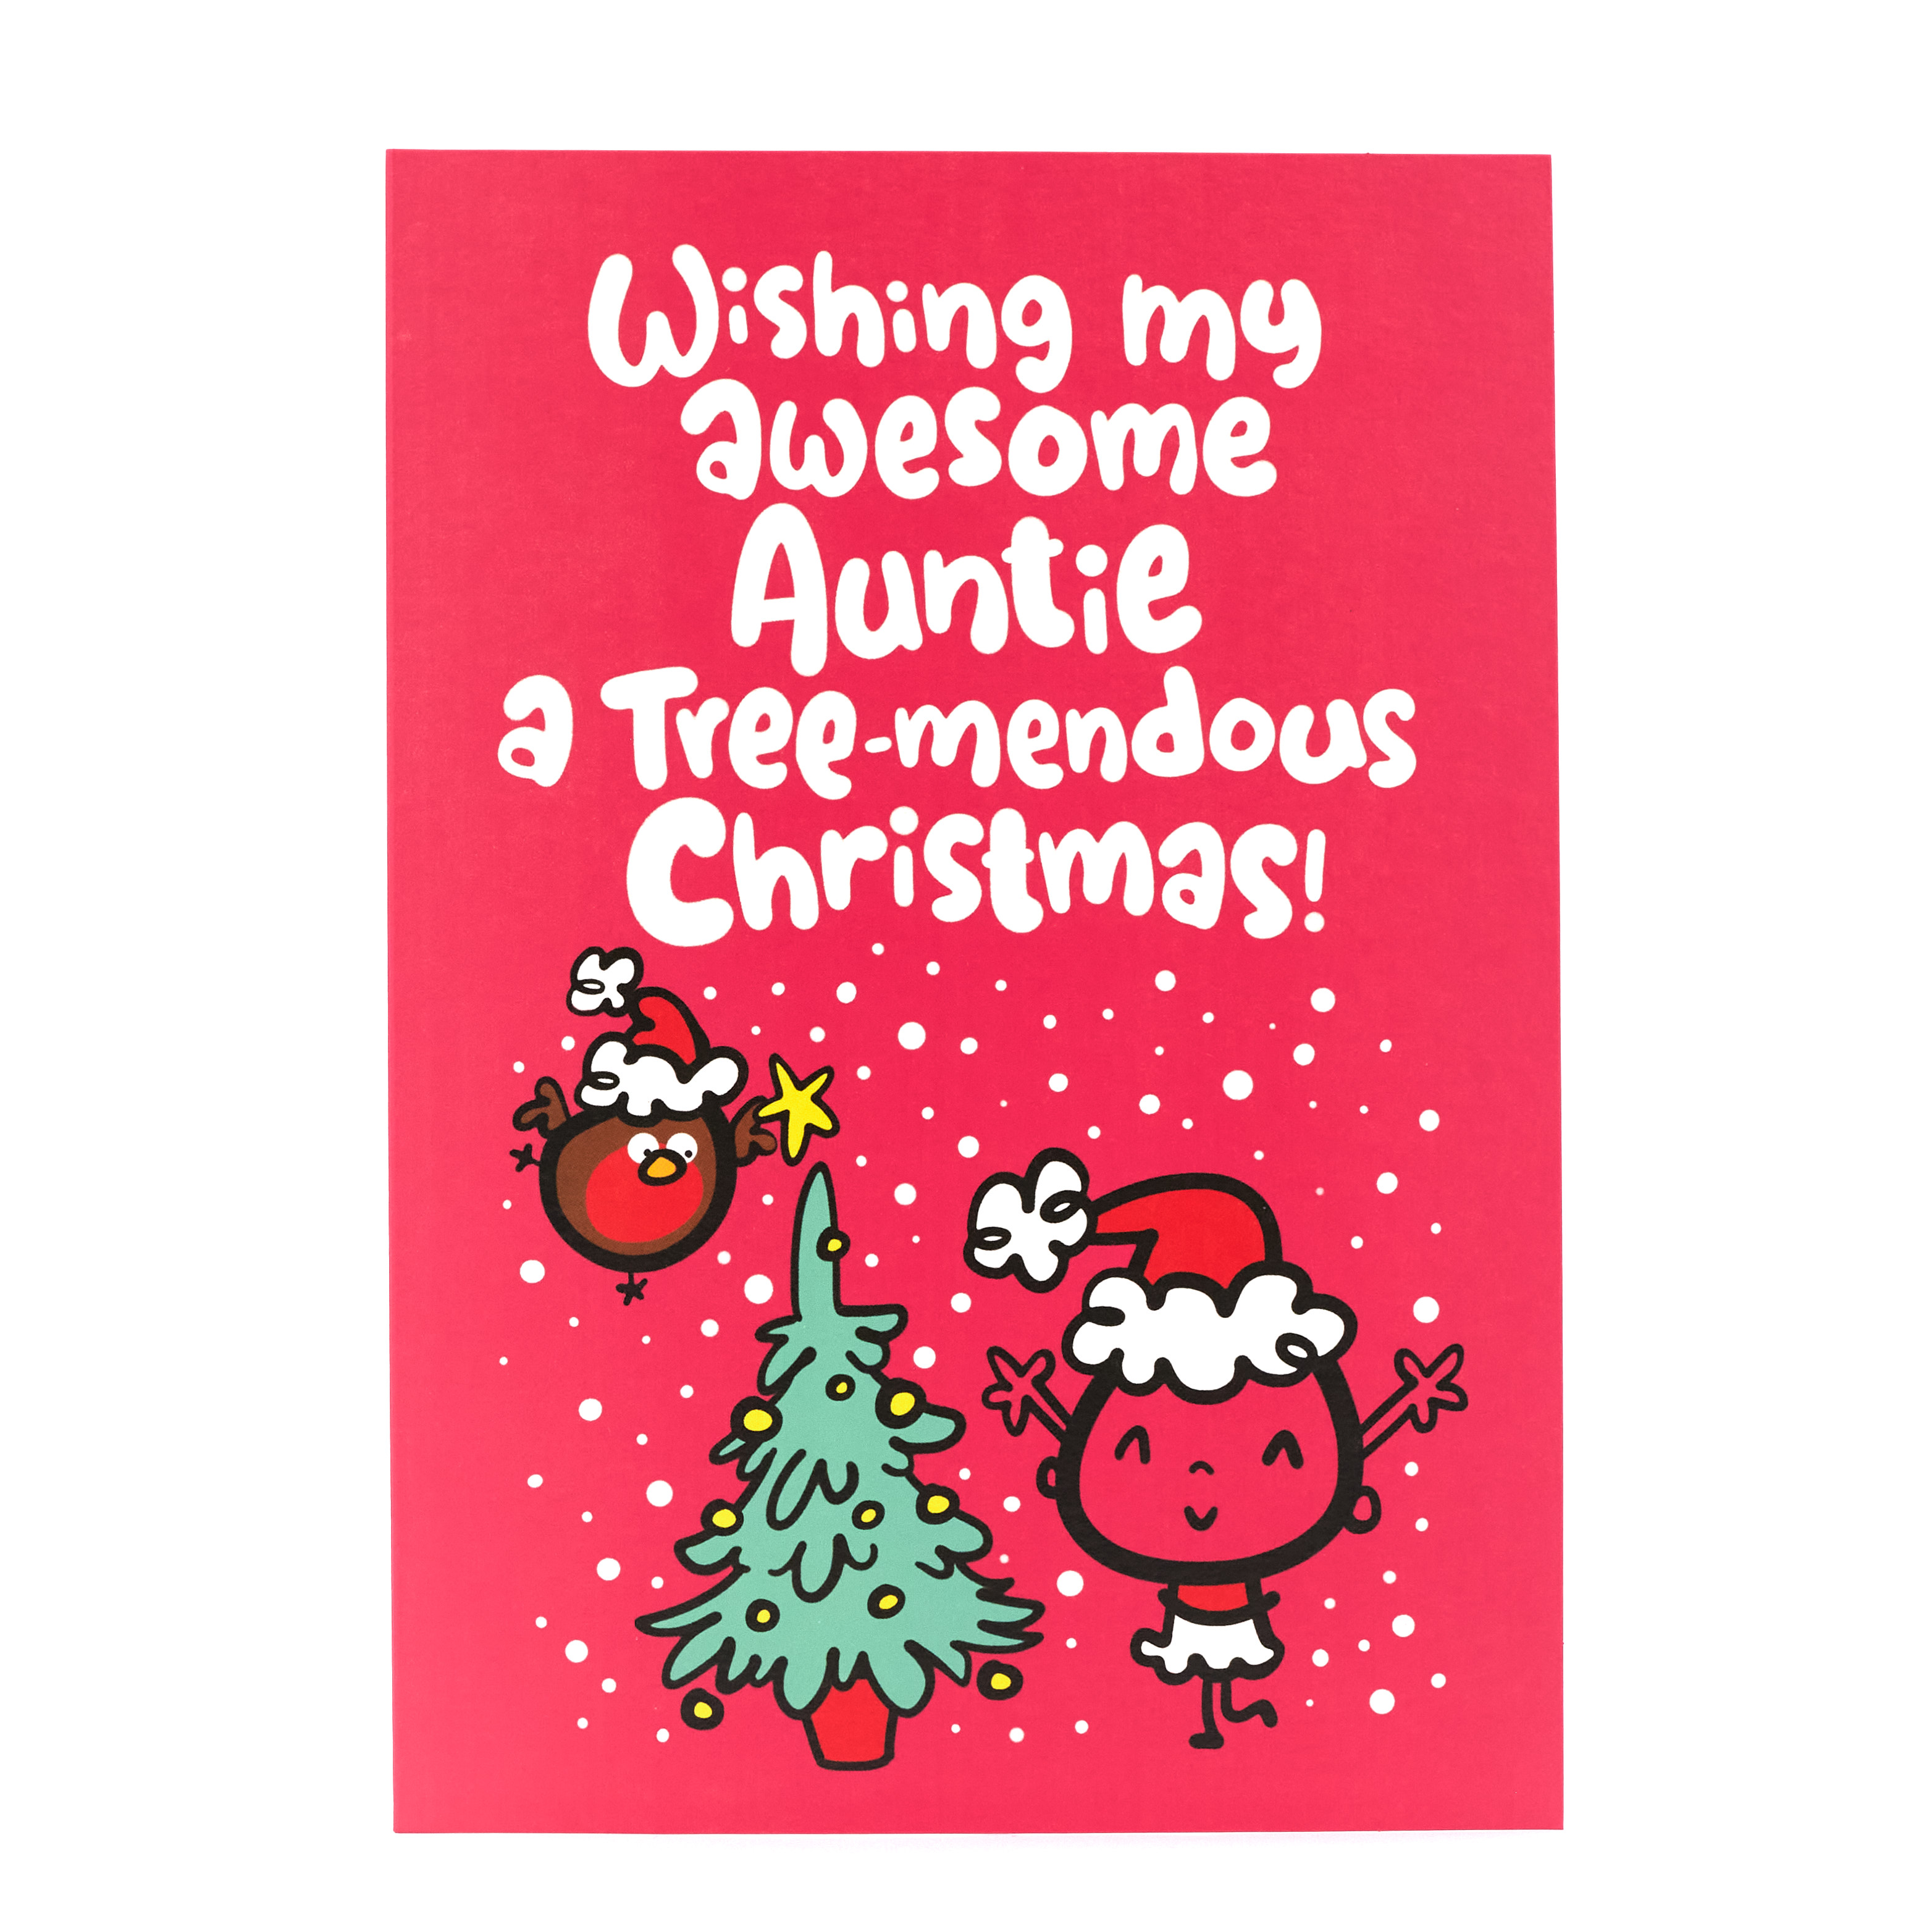 Fuitloops Christmas Card - Auntie, Tree-endous Christmas